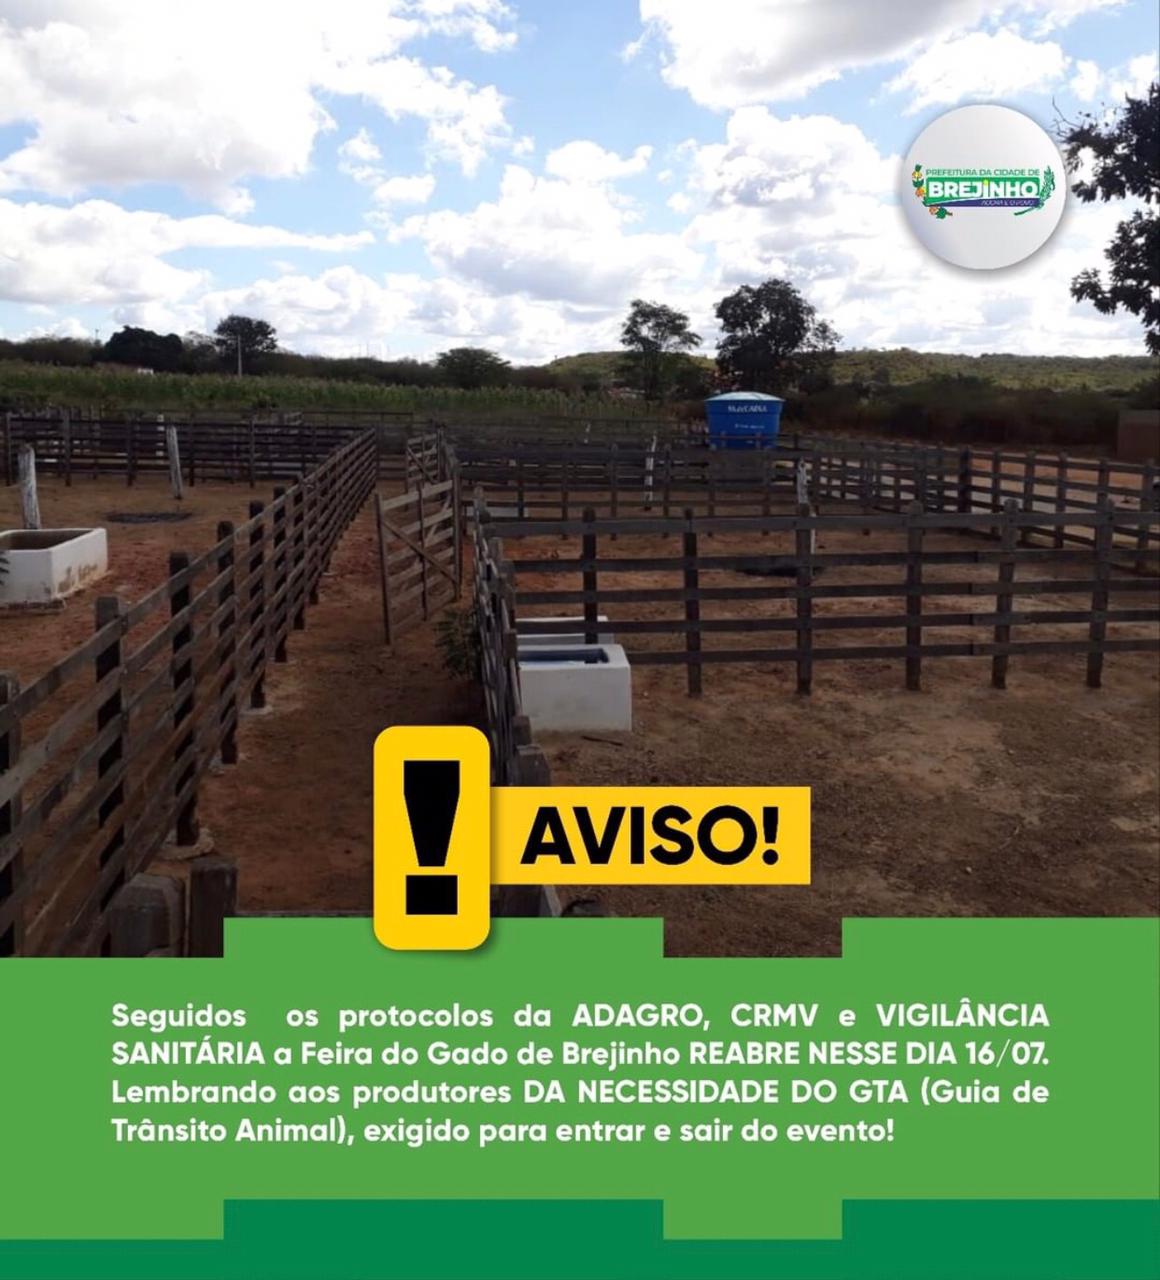 Prefeitura de Brejinho comunica que a volta da feira do gado acontecerá dia 16 de julho